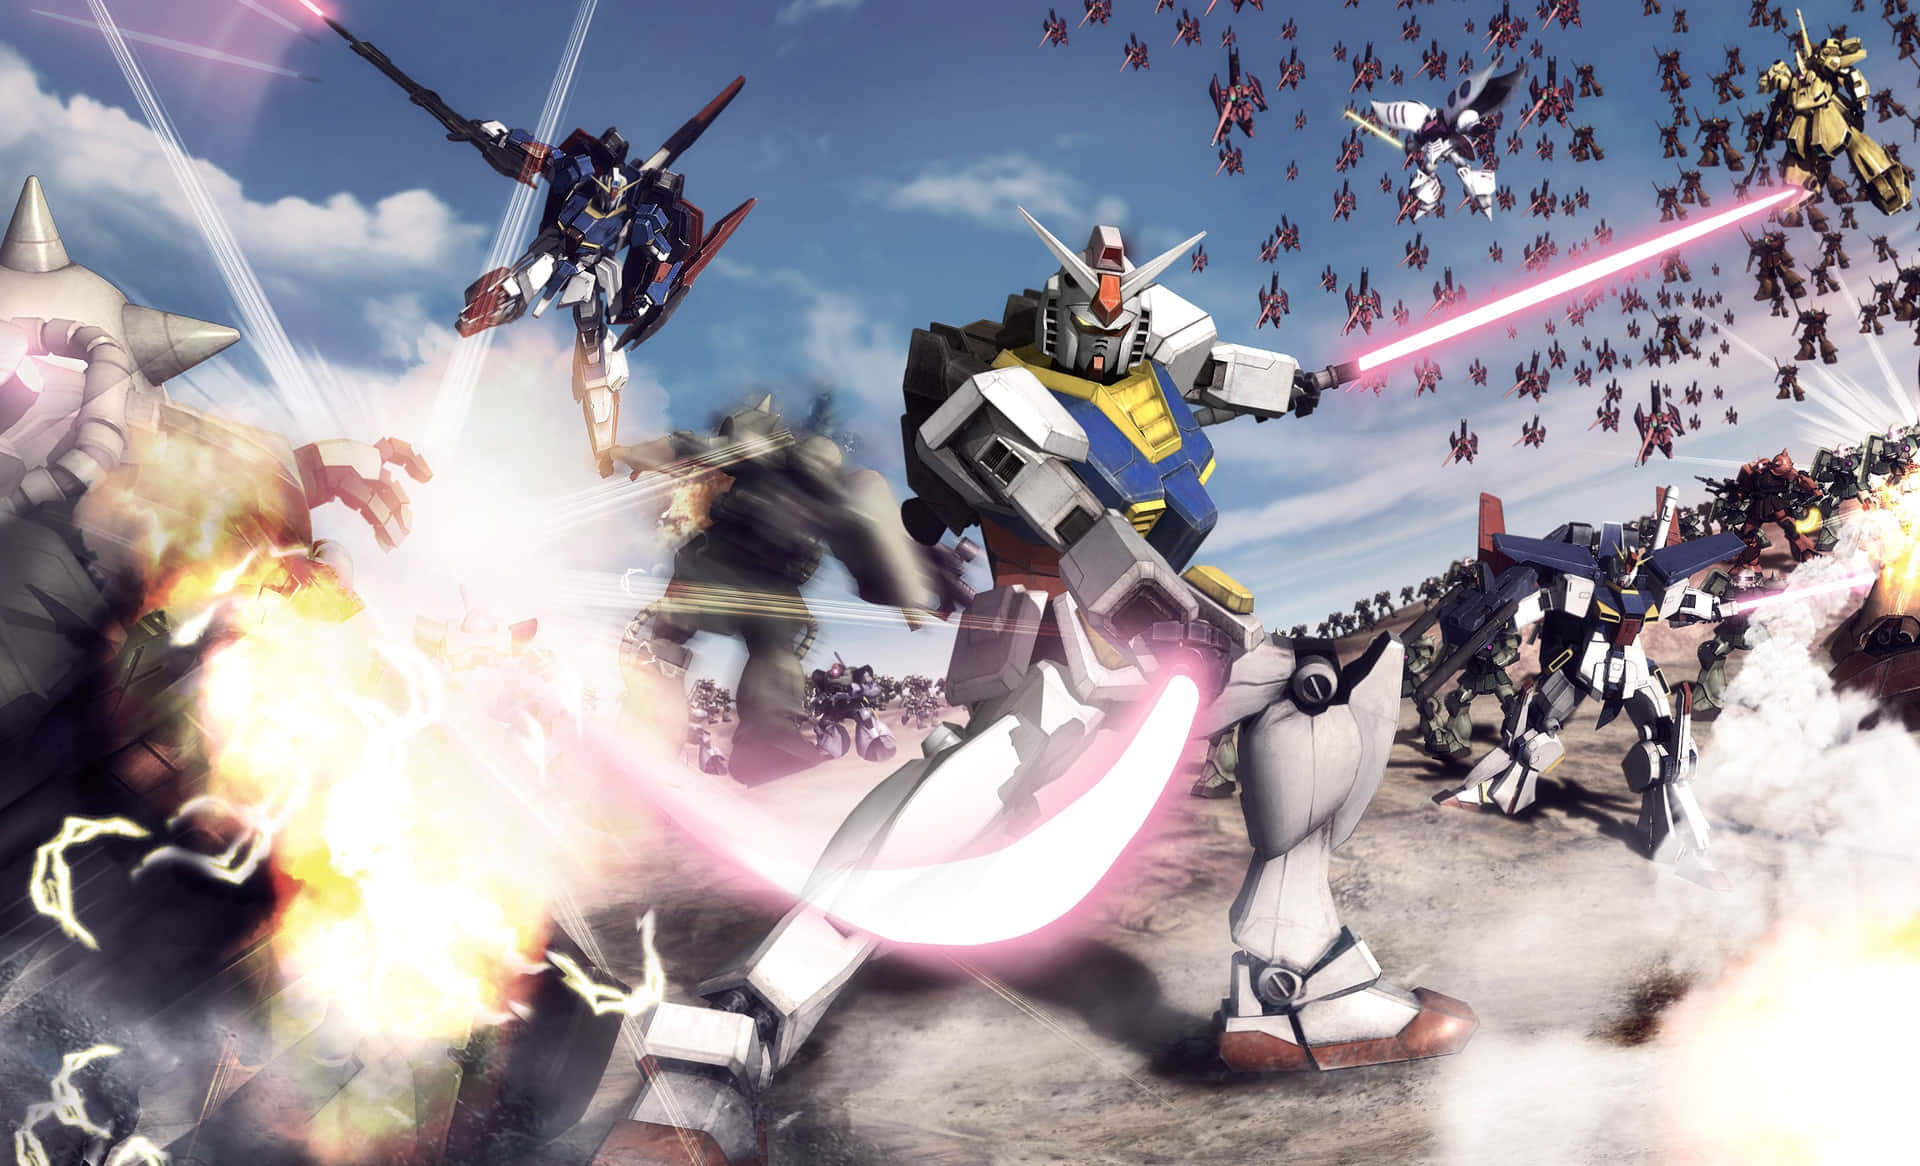 Mobilesuit Gundam Kämpft Für Die Gerechtigkeit.